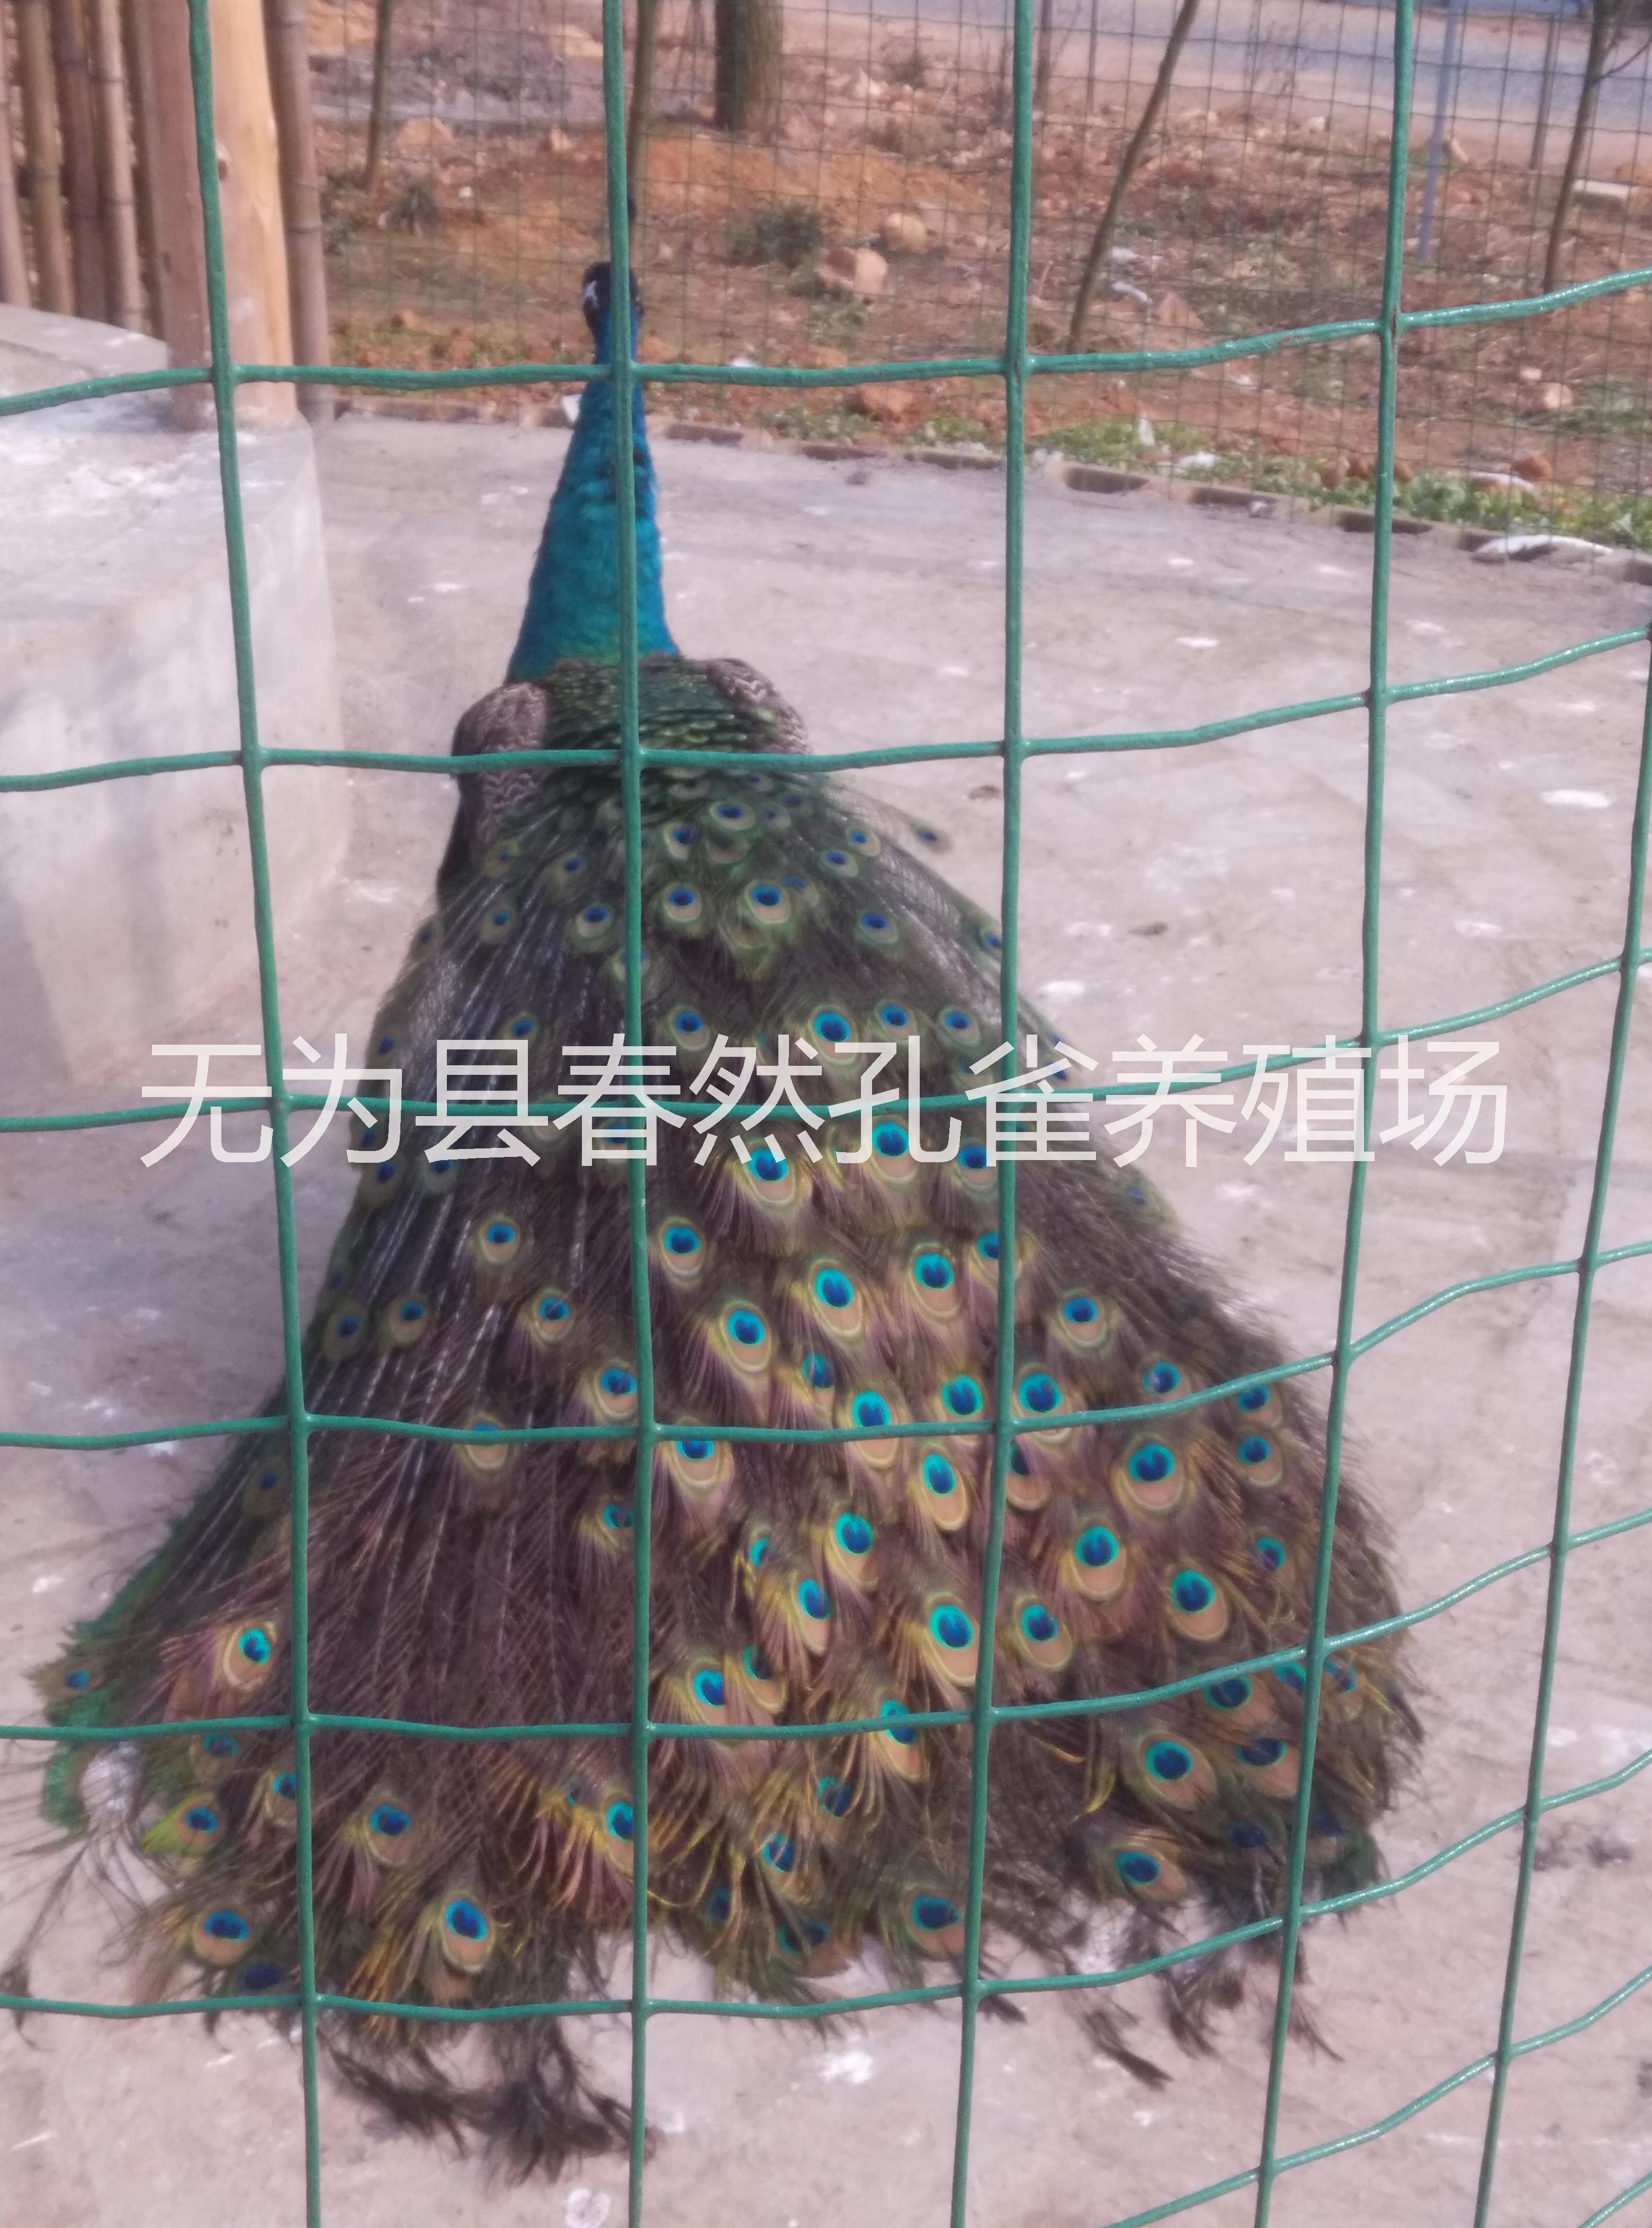 中国市场孔雀标本供应安徽省浩然孔雀养殖有限公司 中国市场孔雀标本供应